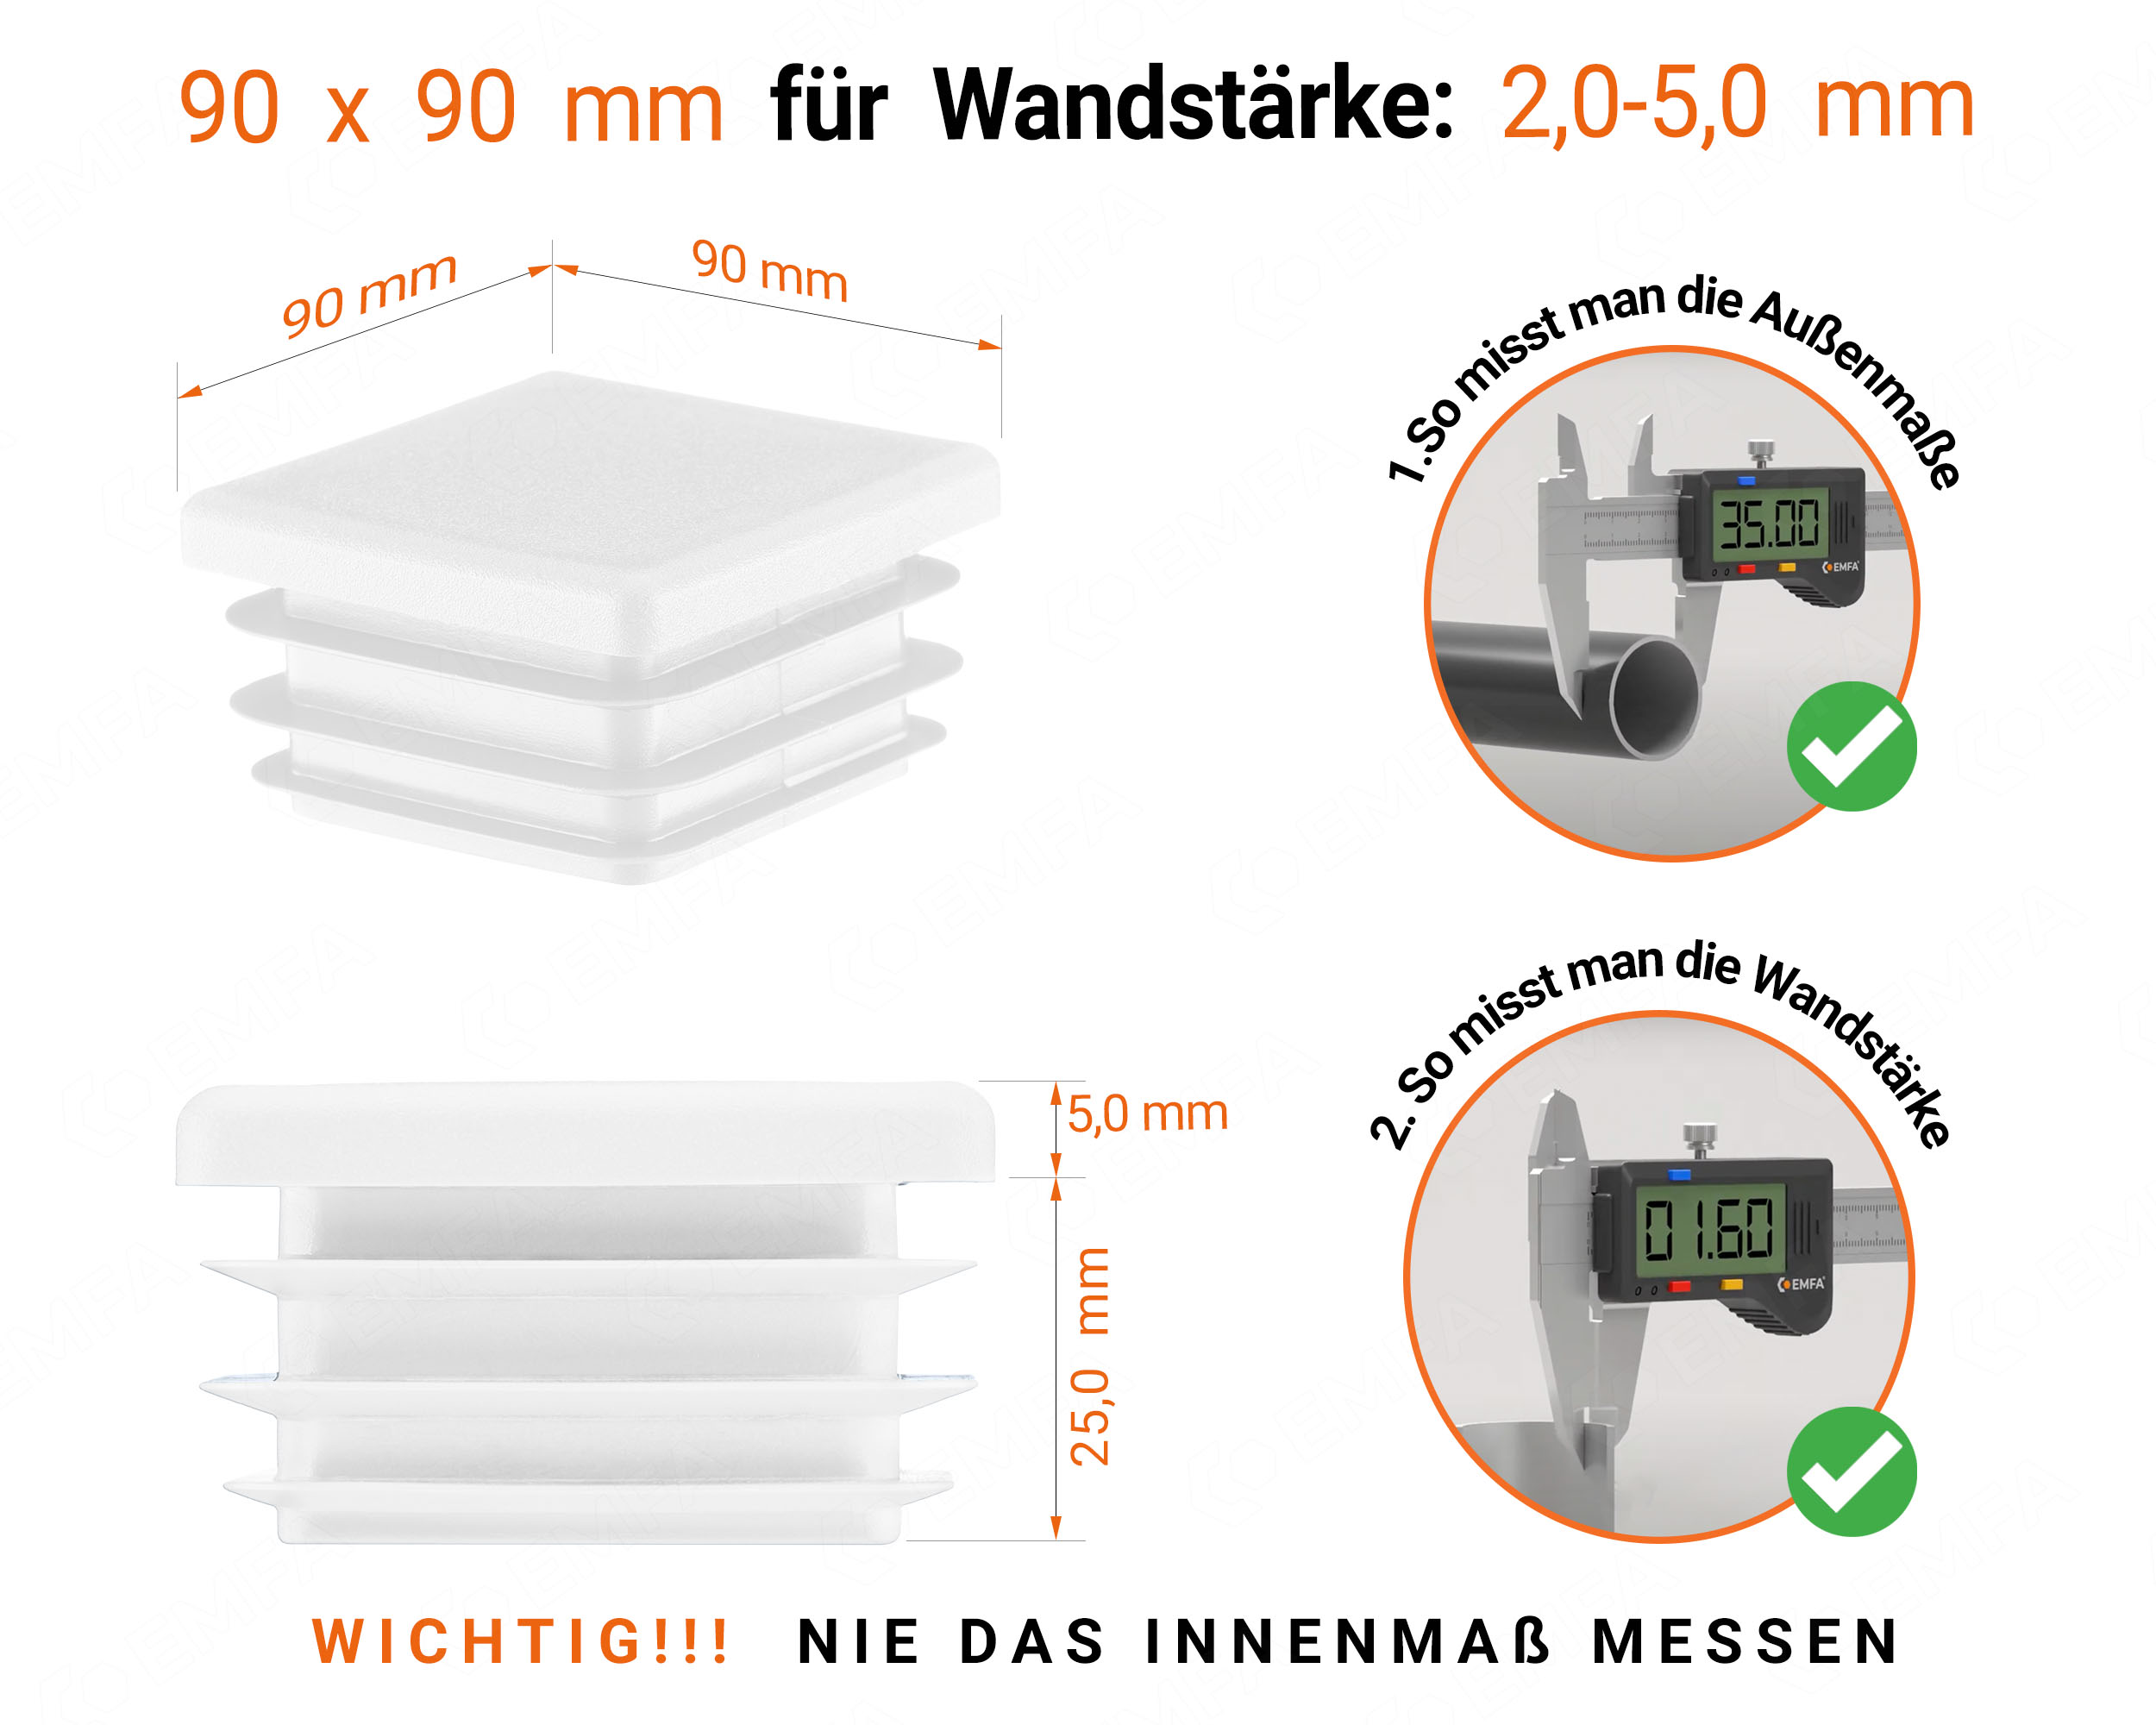 Weiße Endkappe für Vierkantrohre in der Größe 90x90 mm mit technischen Abmessungen und Anleitung für korrekte Messung